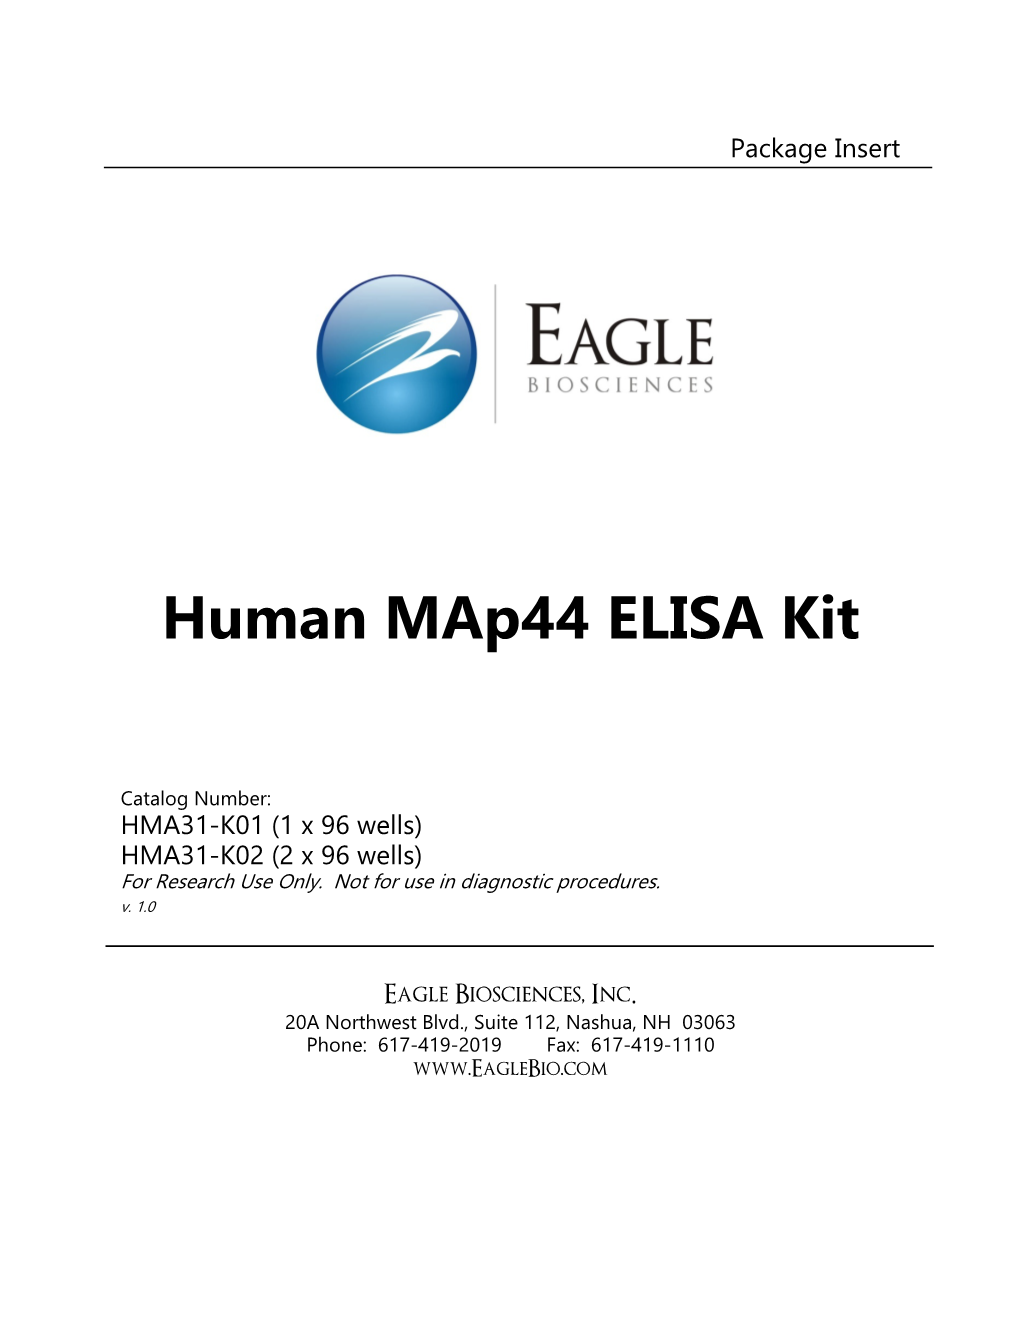 Human Map44 ELISA Kit